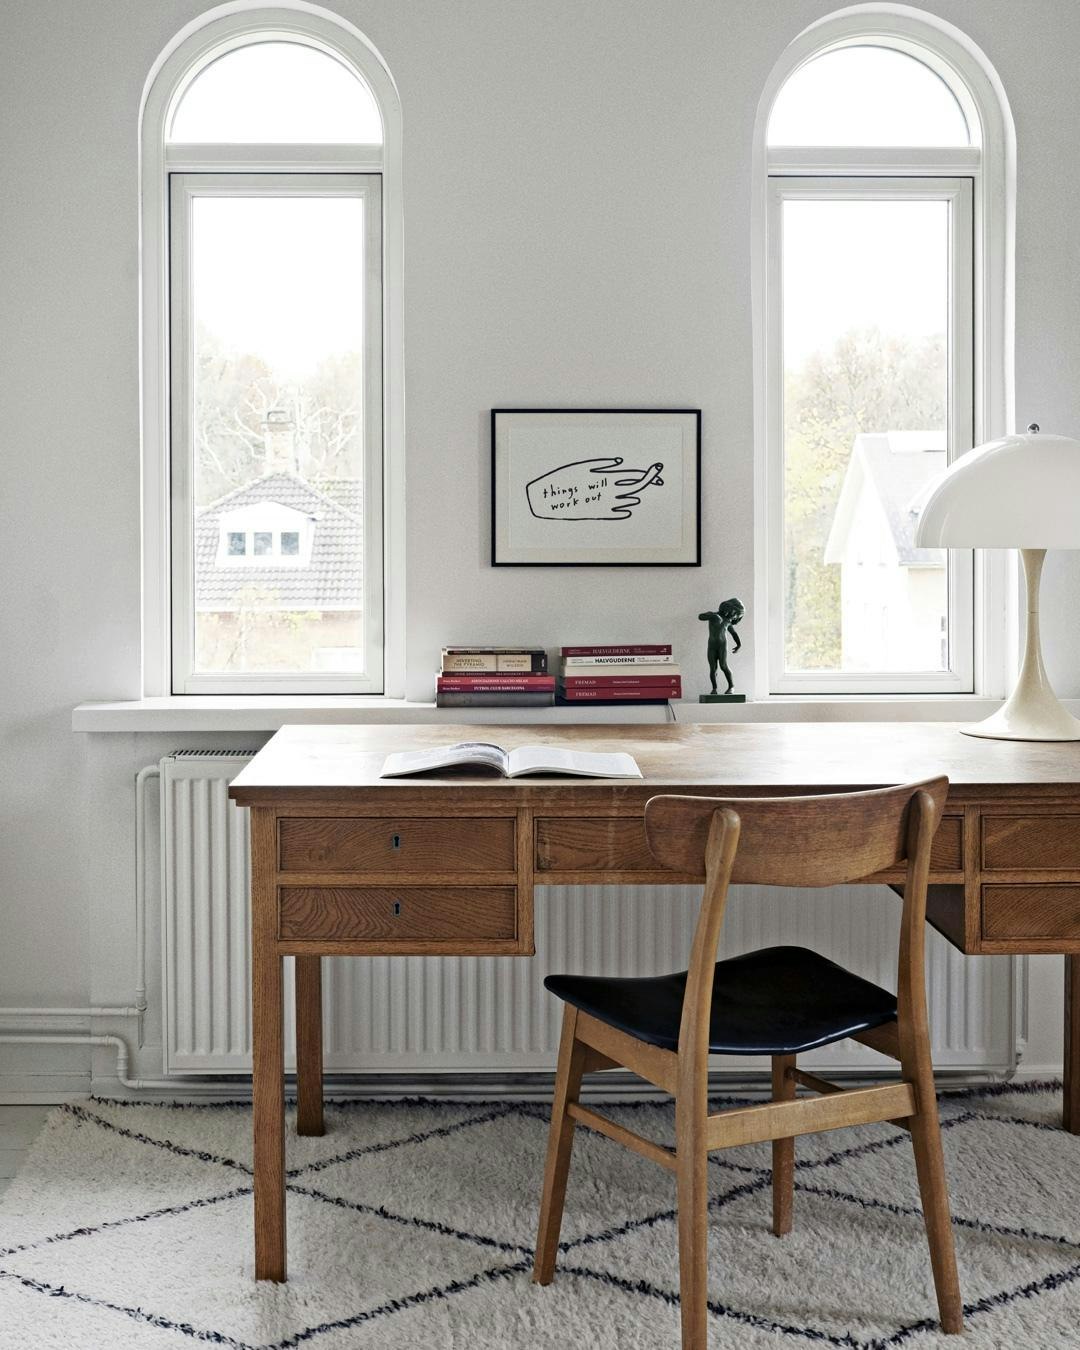 hjemmekontor_indretning_inspiration_praktisk_smukt_lille_kontor_minimalistisk